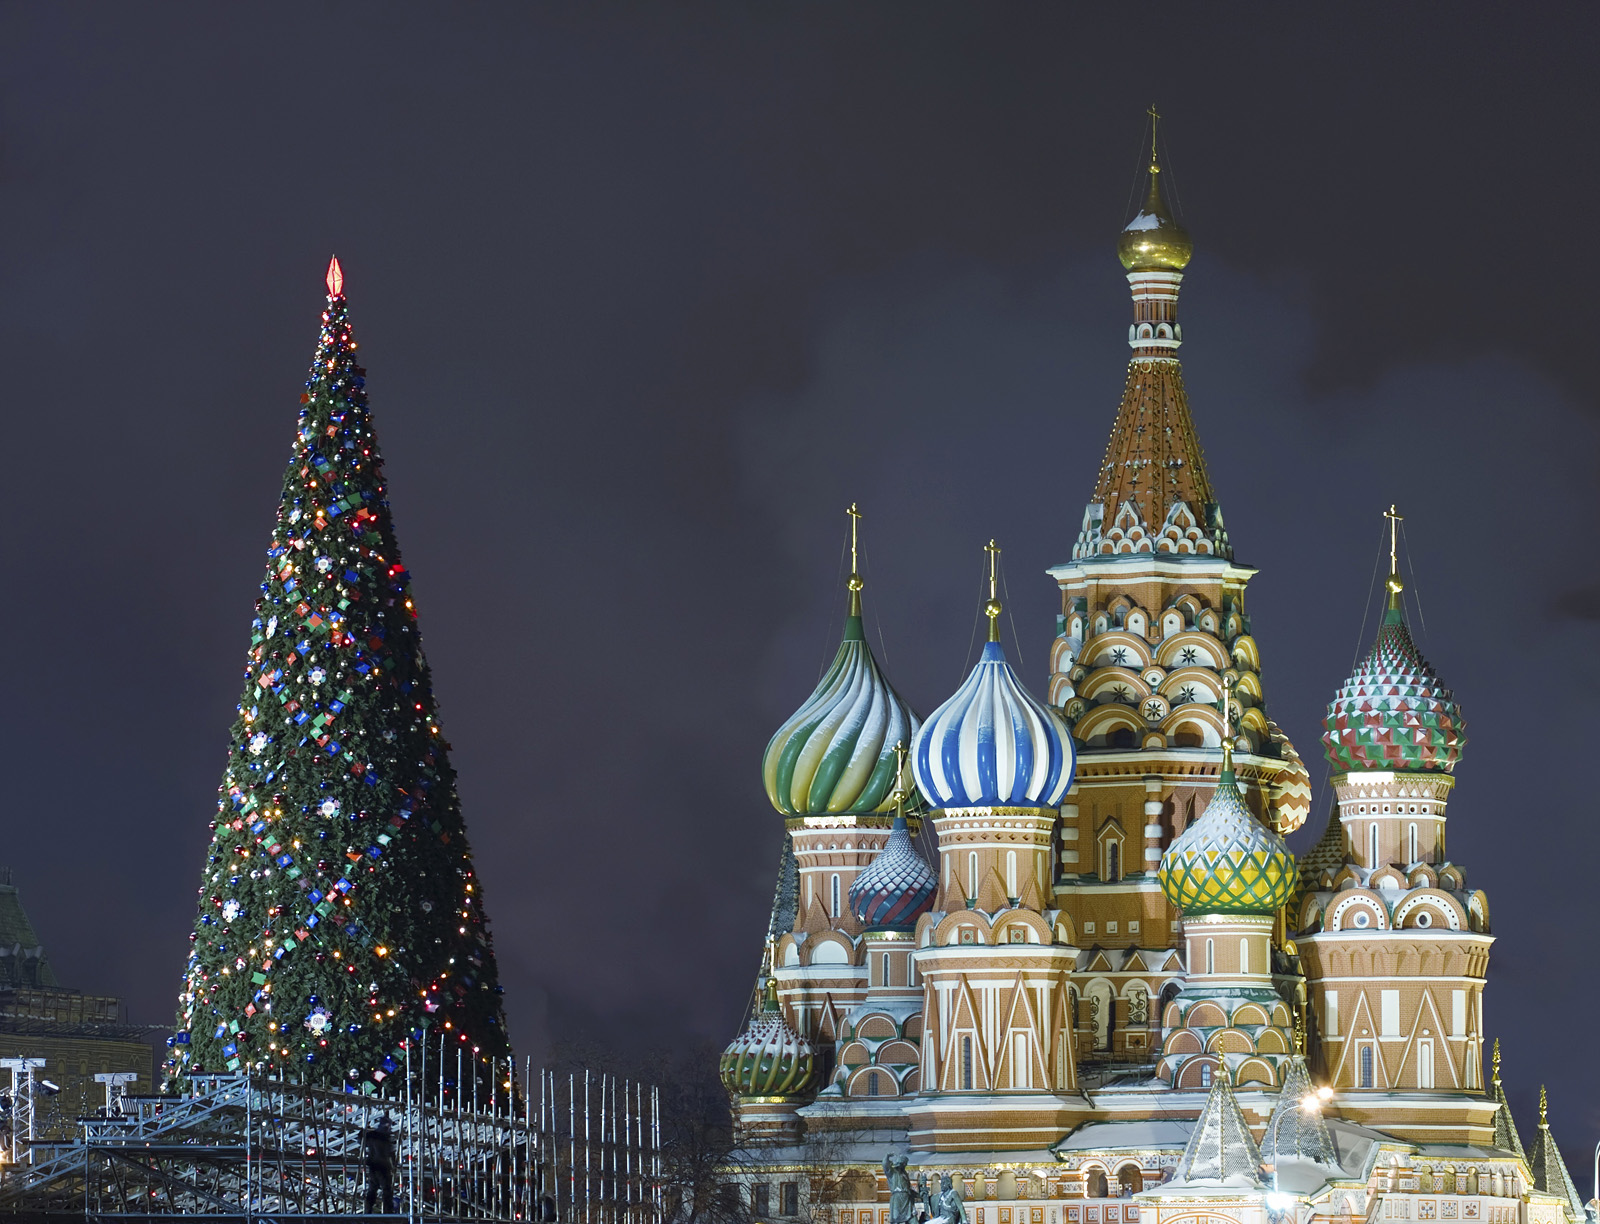 Новый год в россии особенности